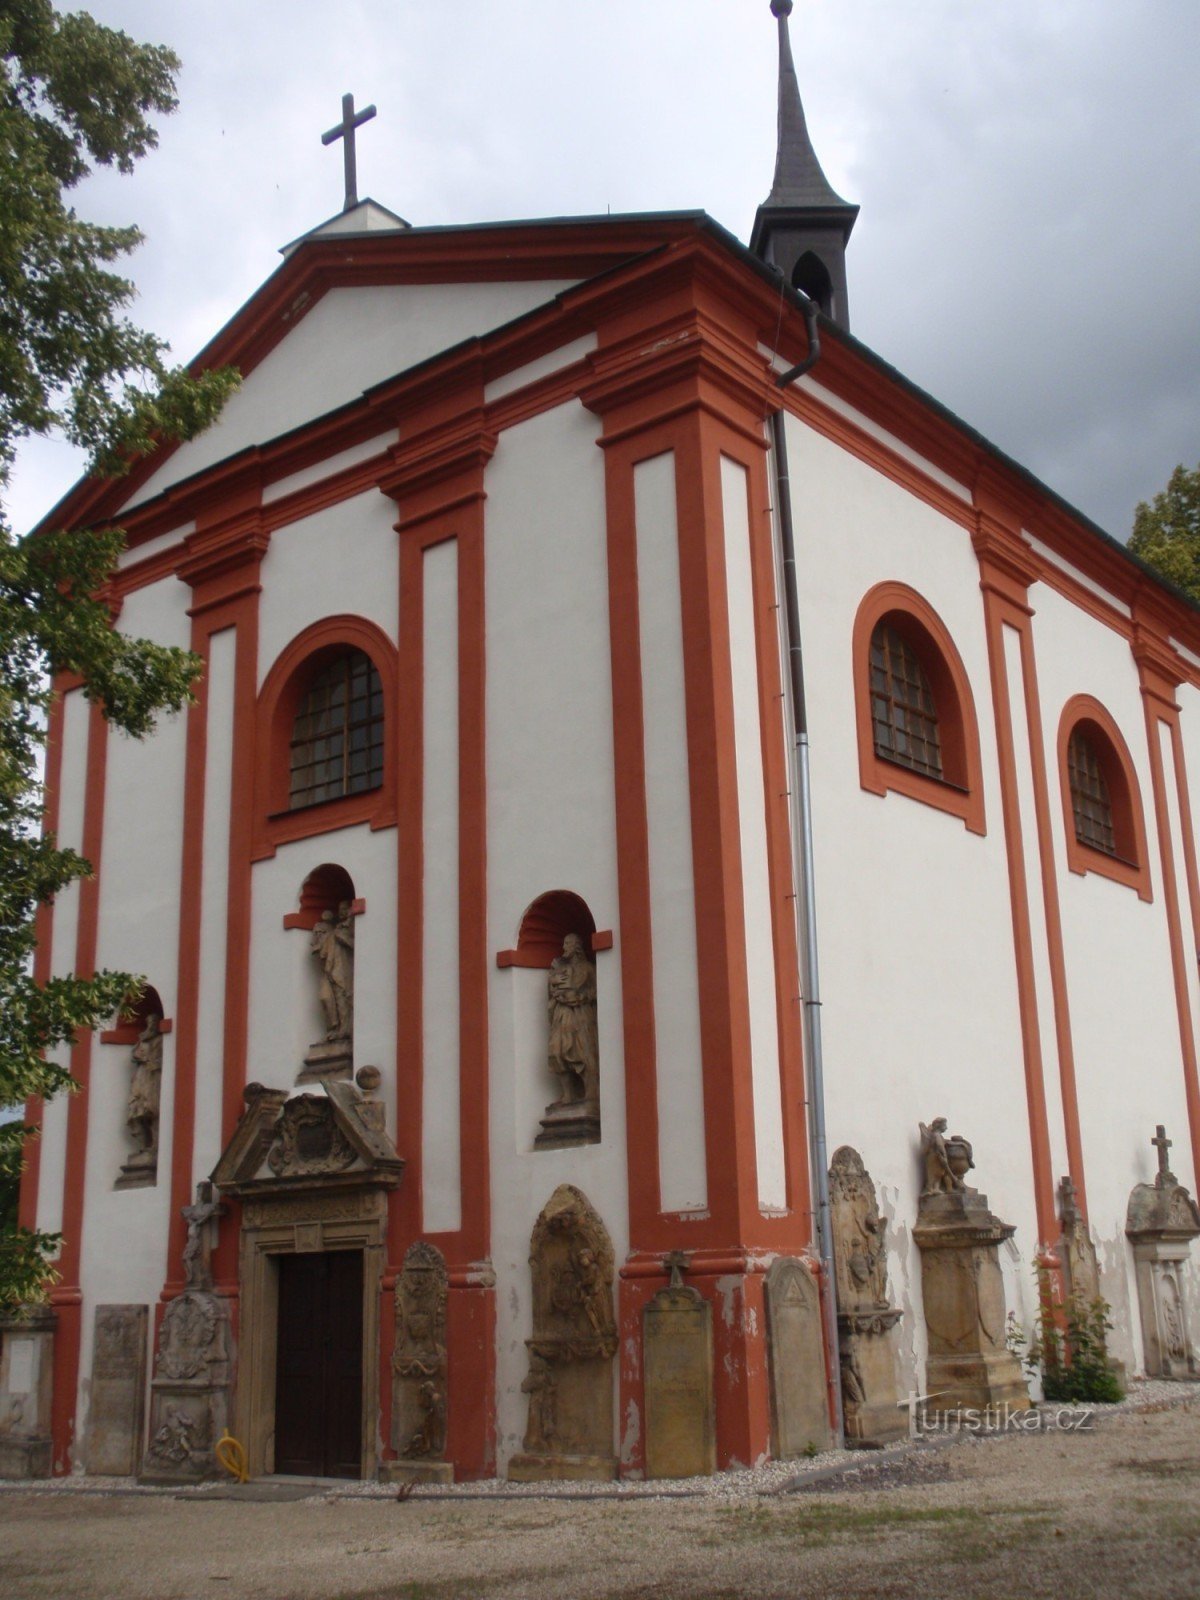 Lanškroun - Friedhofskirche St. Anne